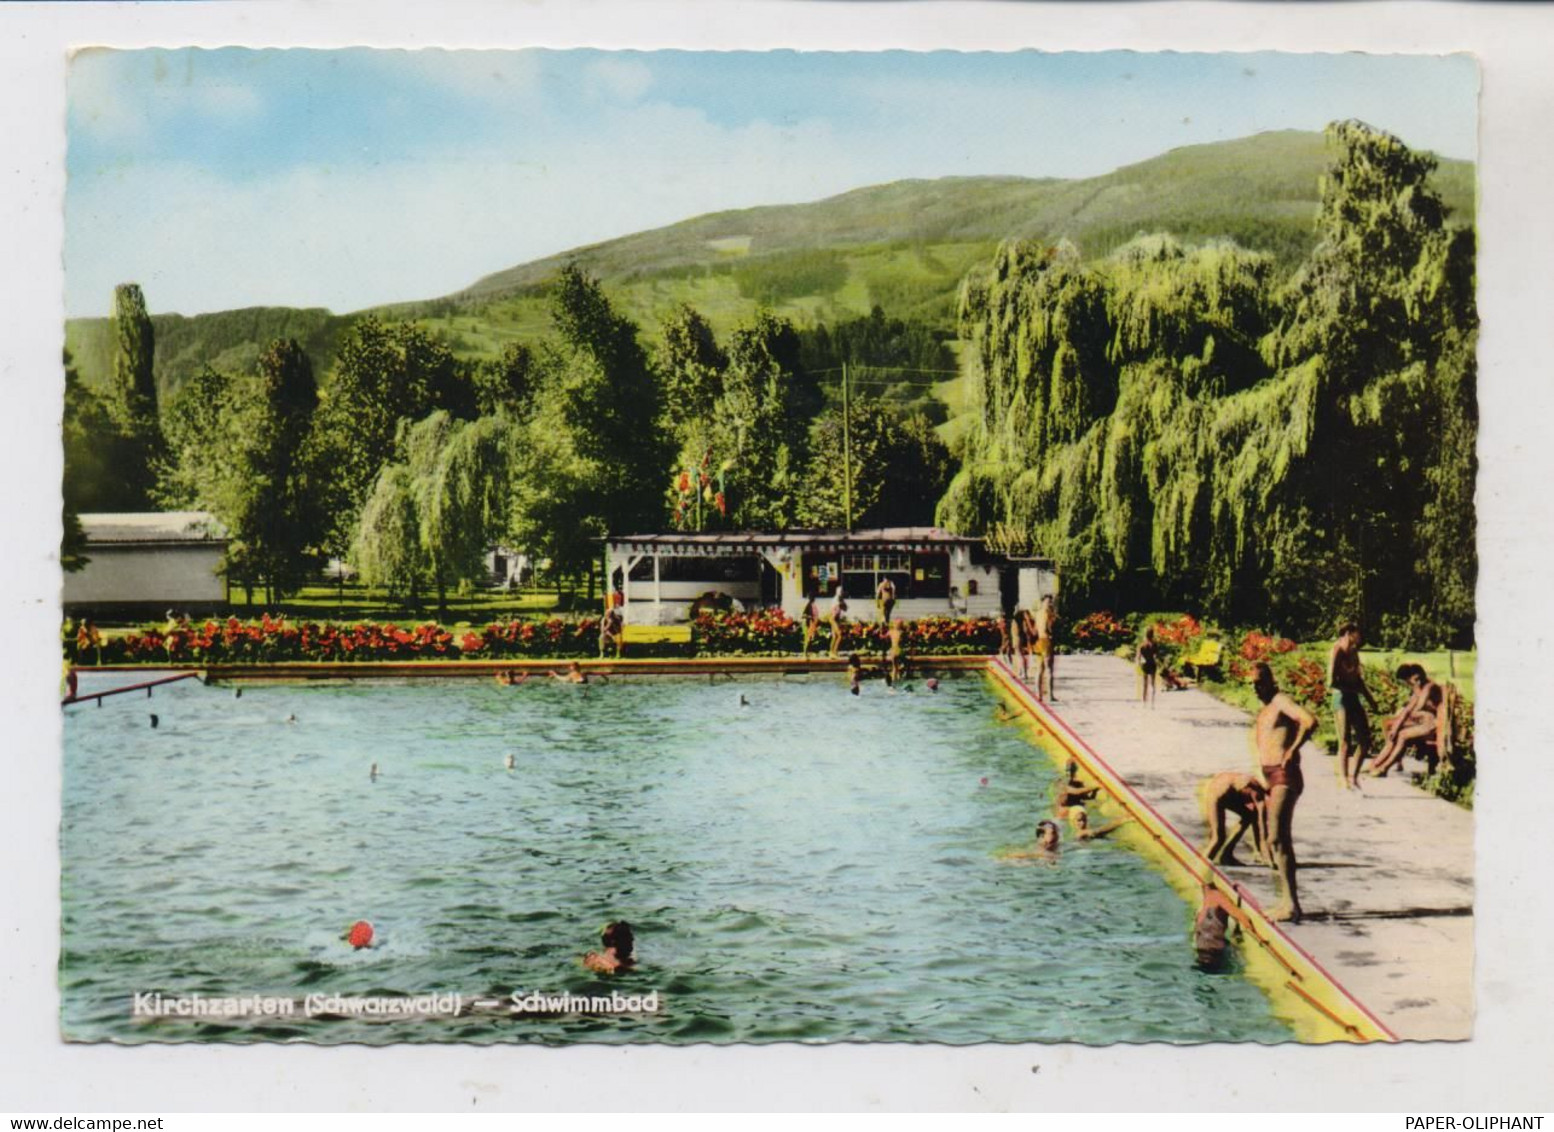 7815 KIRCHZARTEN, Schwimmbad, 1965, Handcoloriert - Kirchzarten